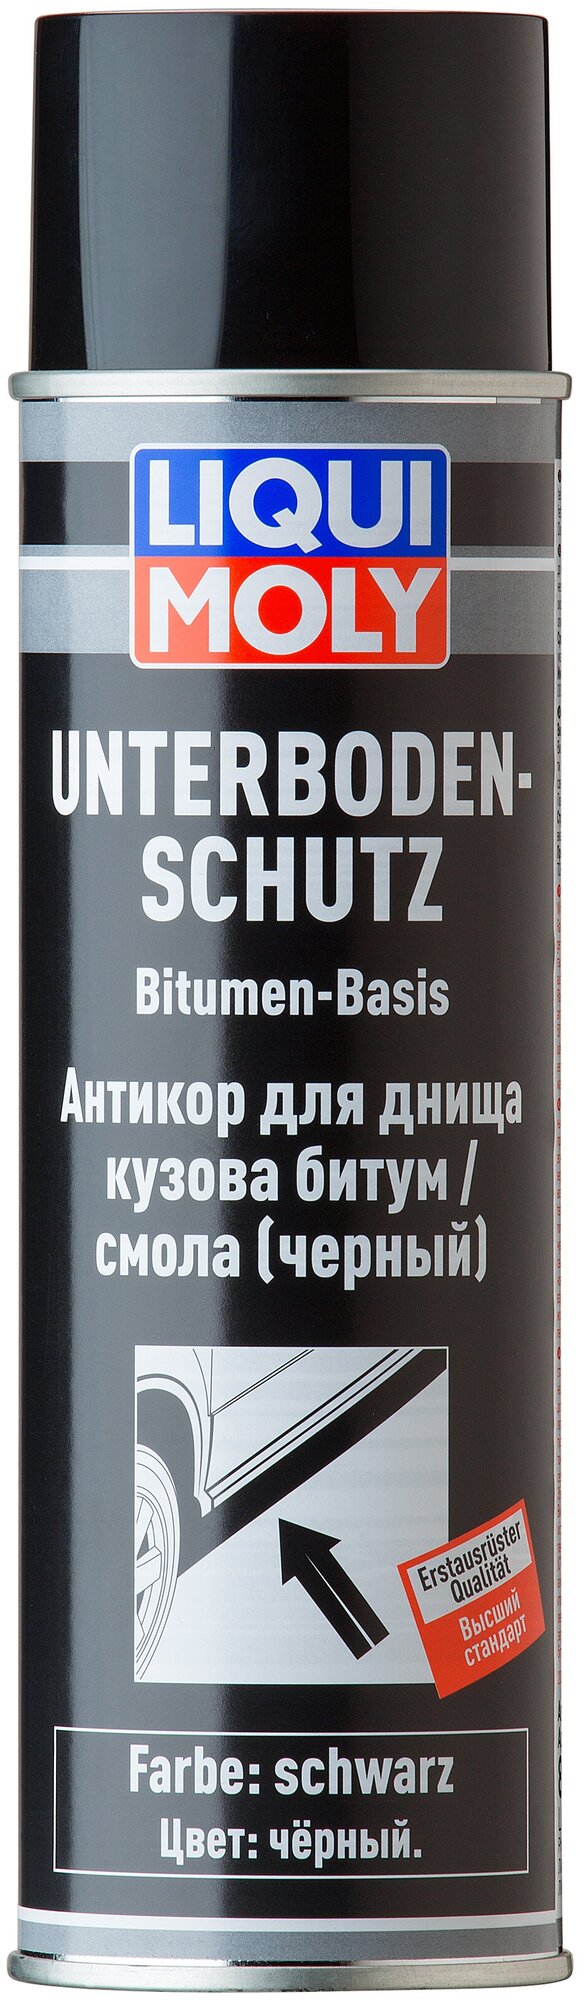 Антикор для днища кузова битум/смола LIQUI MOLY Unterboden-Schutz Bitumen schwarz, чёрный, 0,5 л.